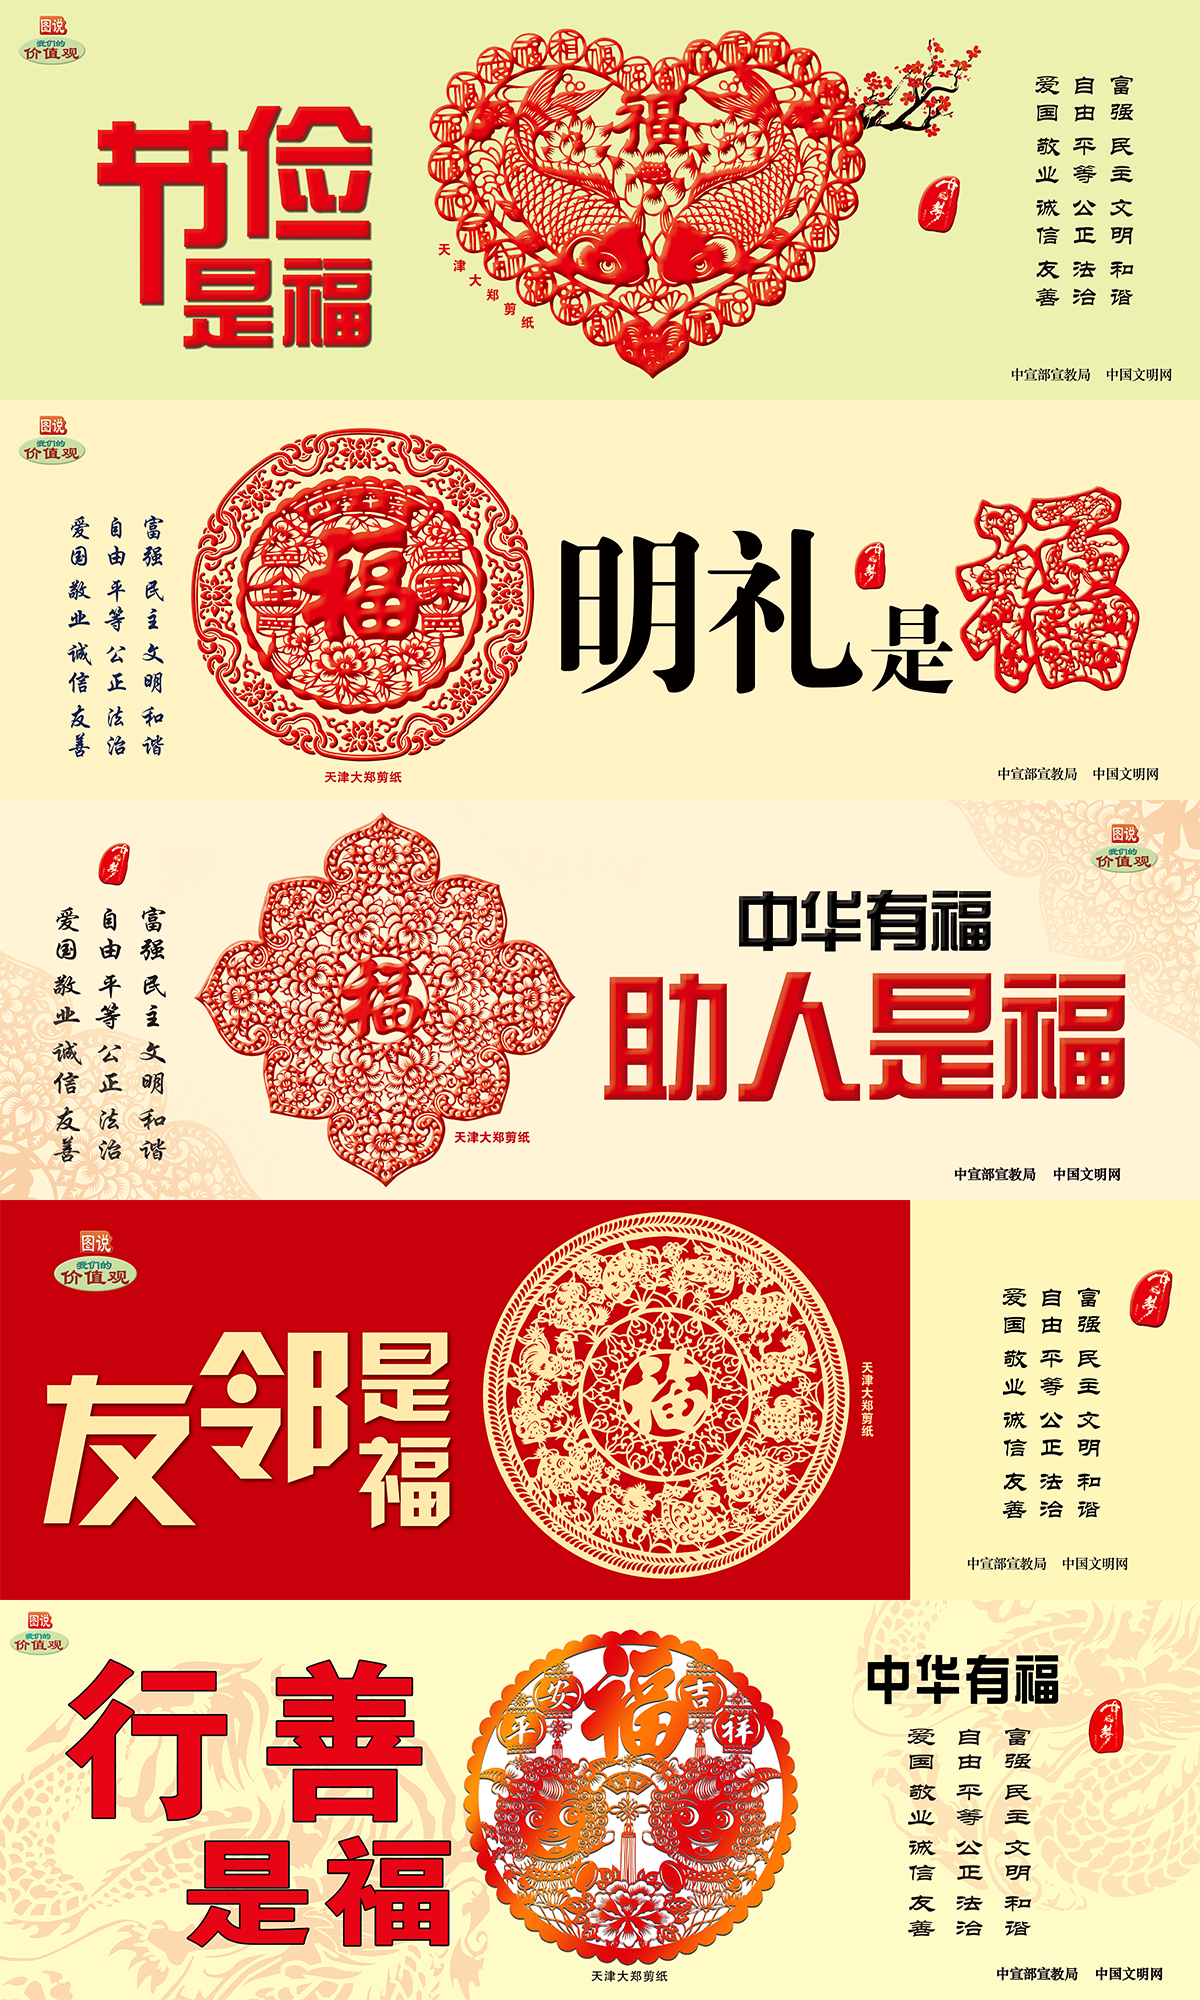 中国文明网公益广告《中华有福》